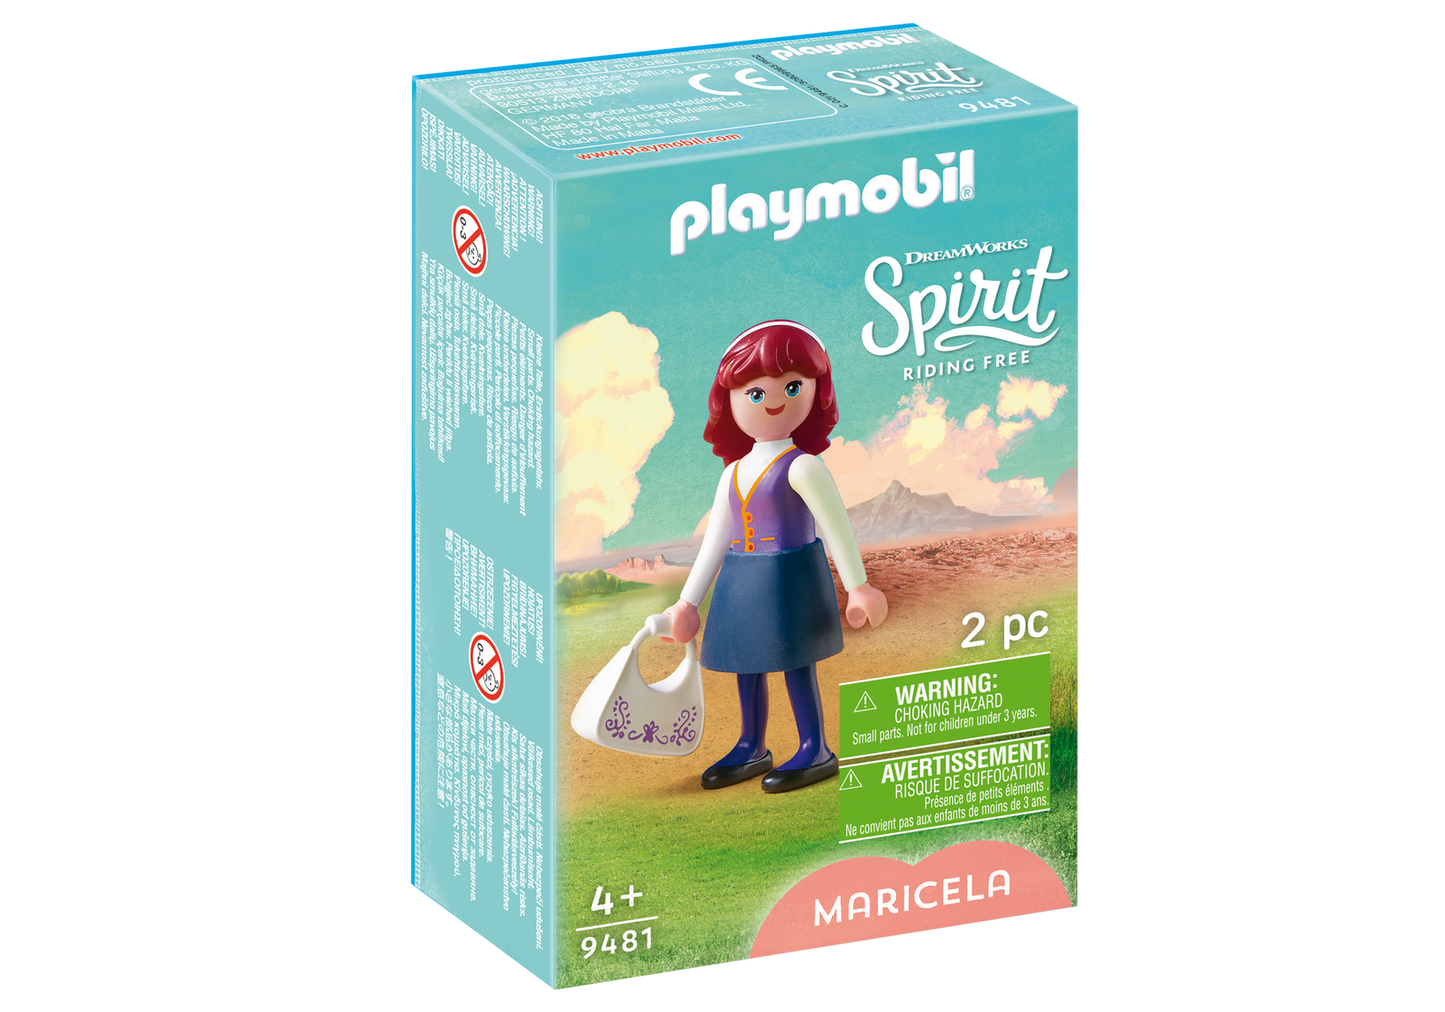 Playmobil Spirit Riding Free Maricela 9481